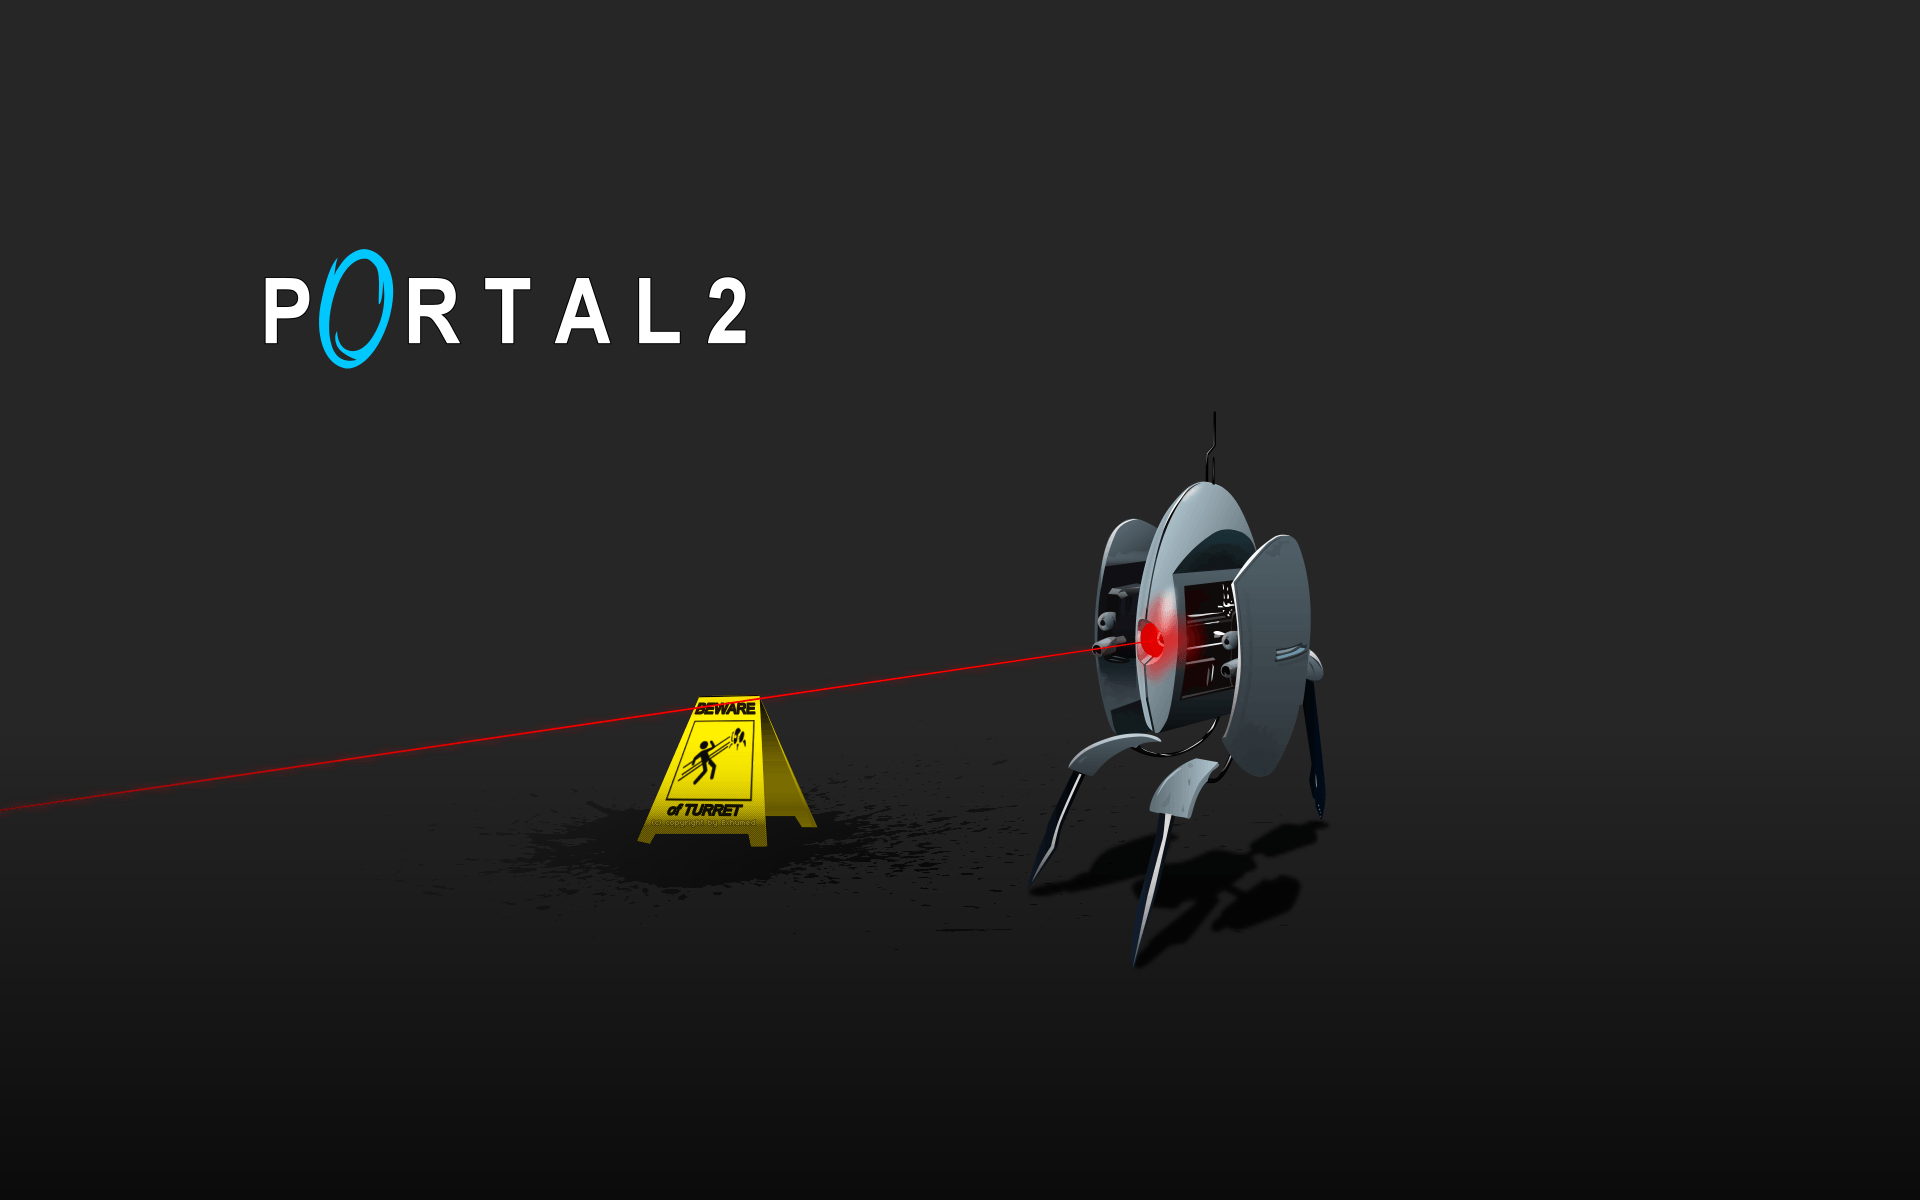 portal 2 wallpaper hd